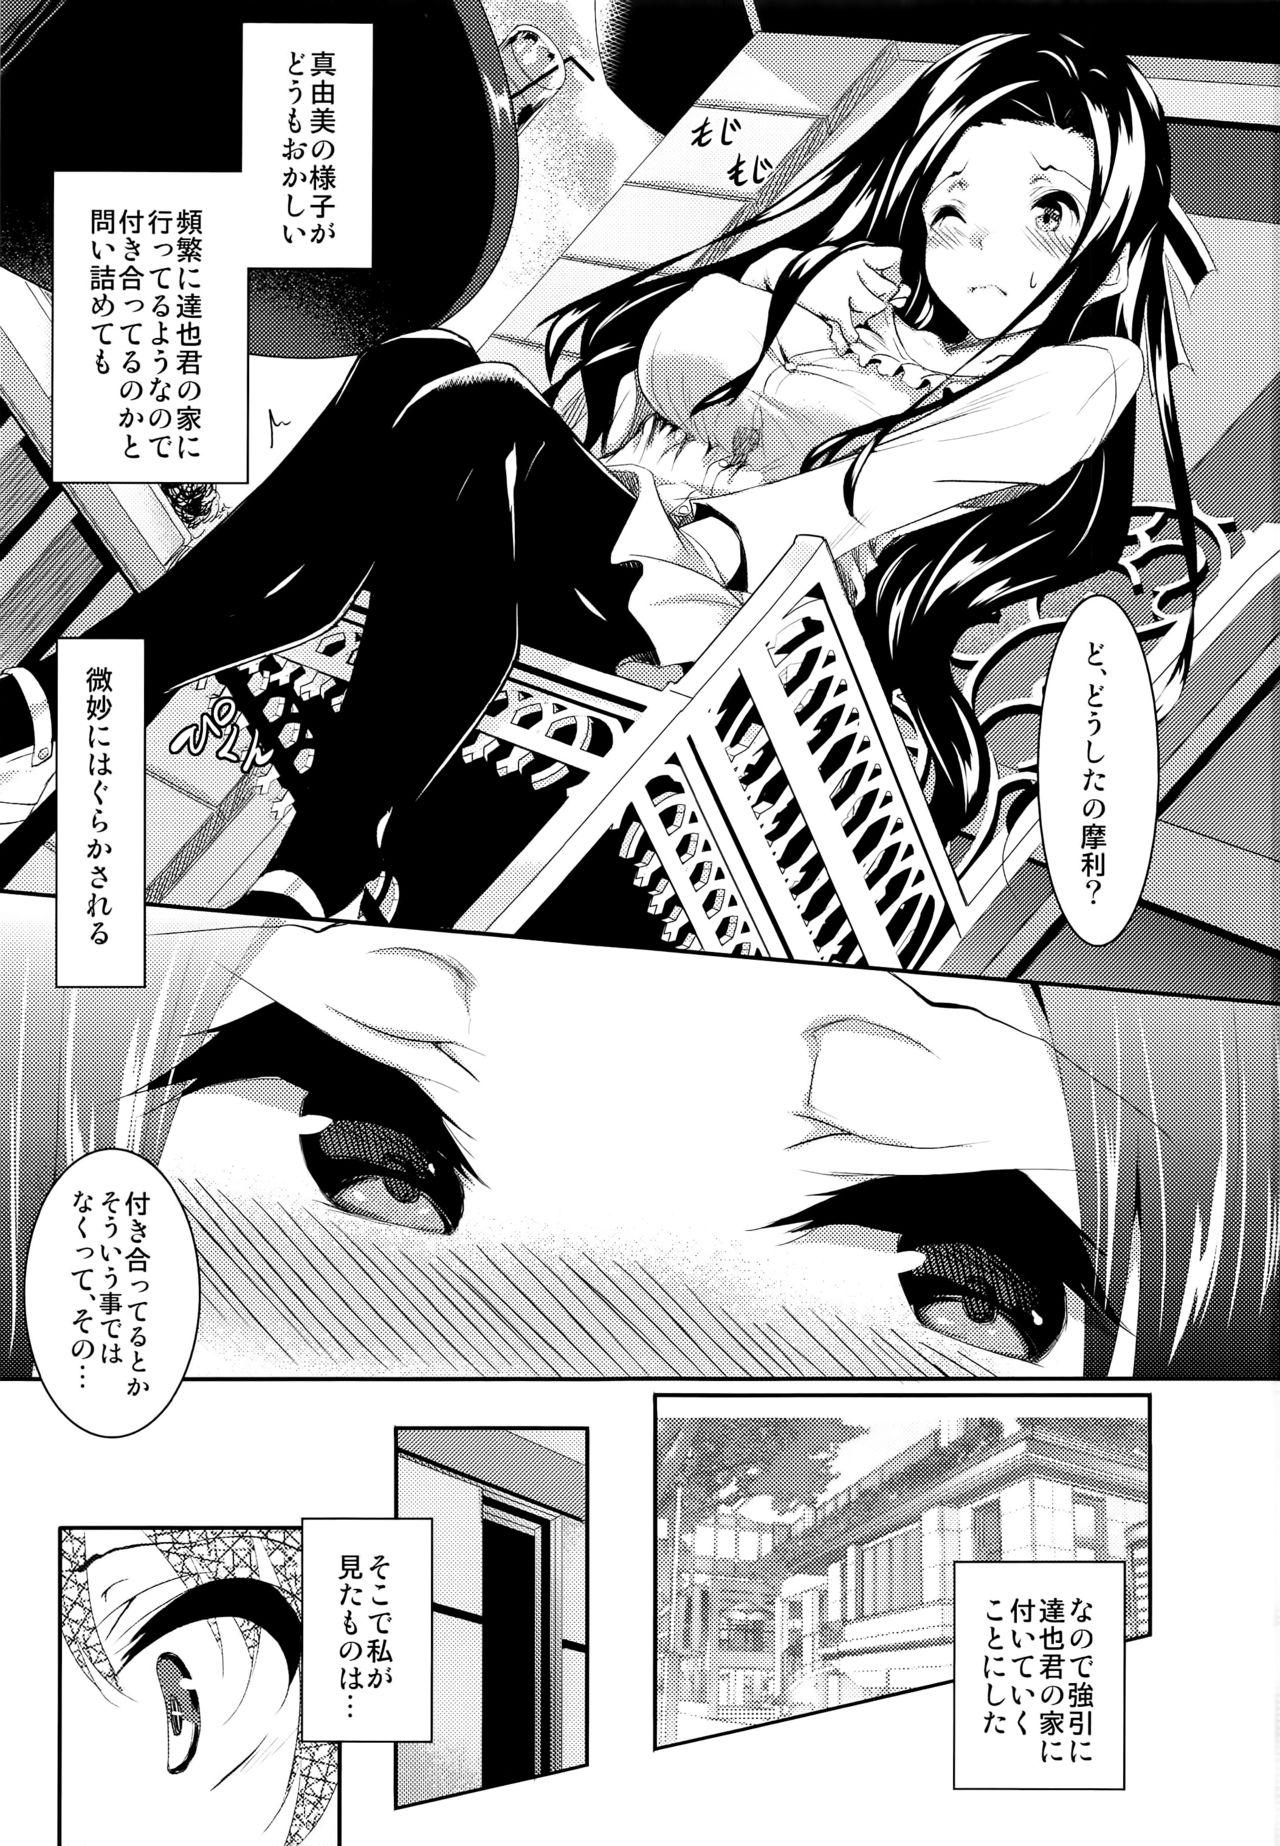 Hand Sasuoni! 4 - Mahouka koukou no rettousei Asian Babes - Page 3